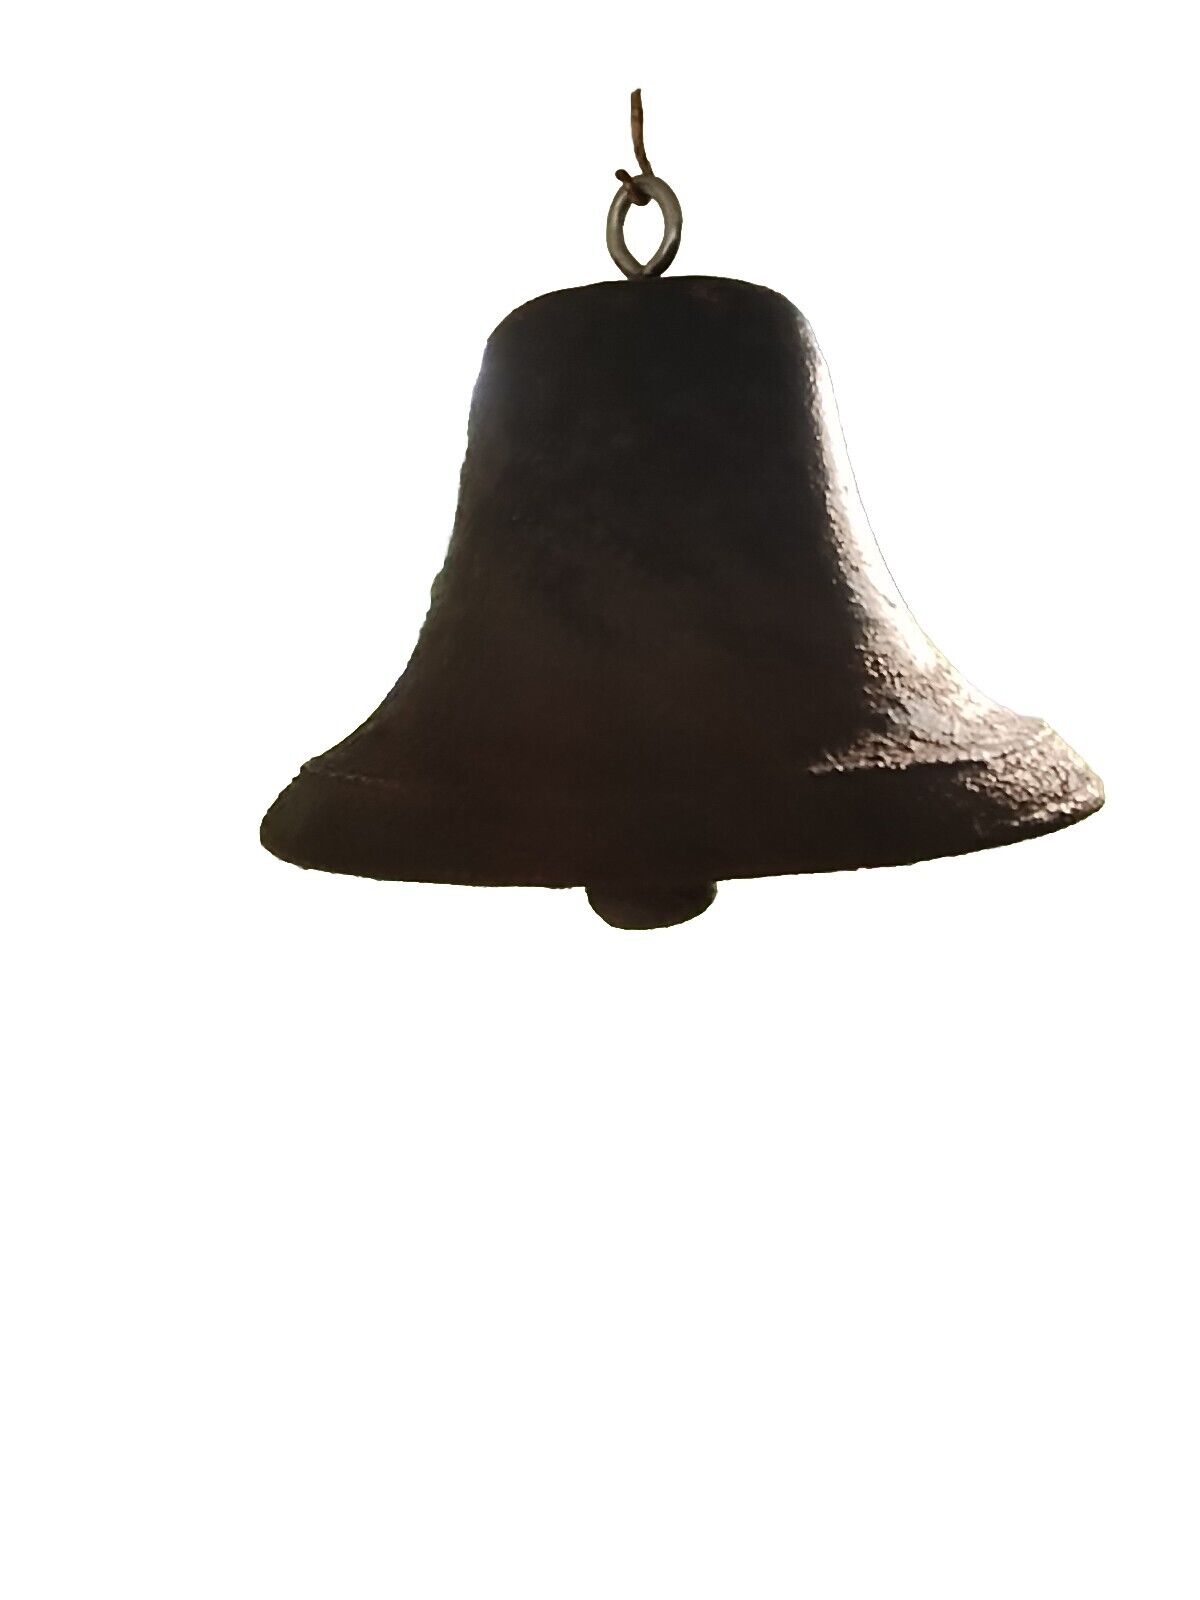 1800s School Bell Cast Iron Rare